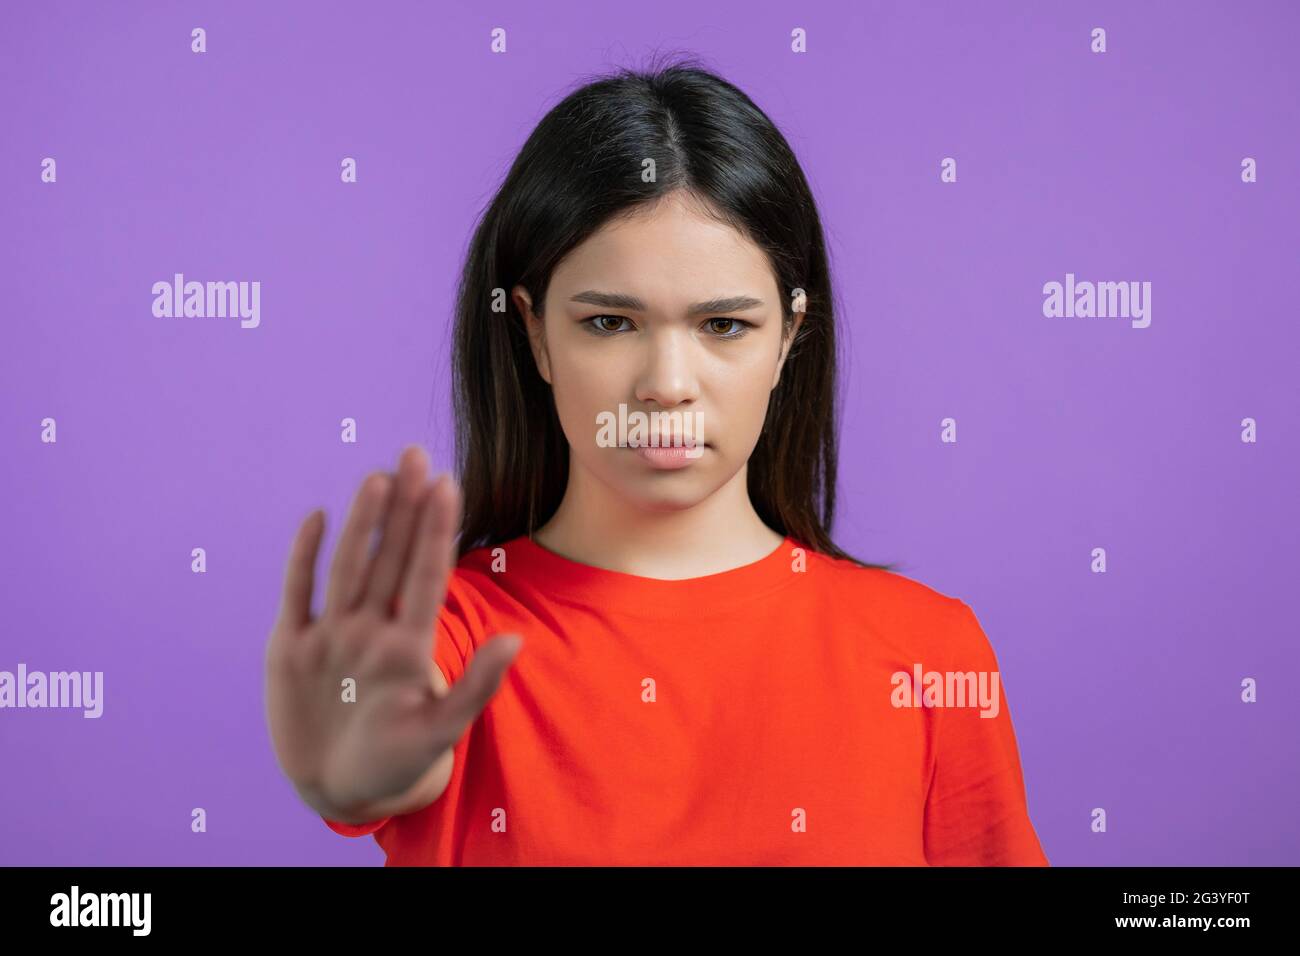 Hübsche Frau missbilligt ohne Handzeichen Geste. Leugnen, Ablehnung, nicht einverstanden, Porträt von schönen Mädchen auf violettem Hintergrund Stockfoto